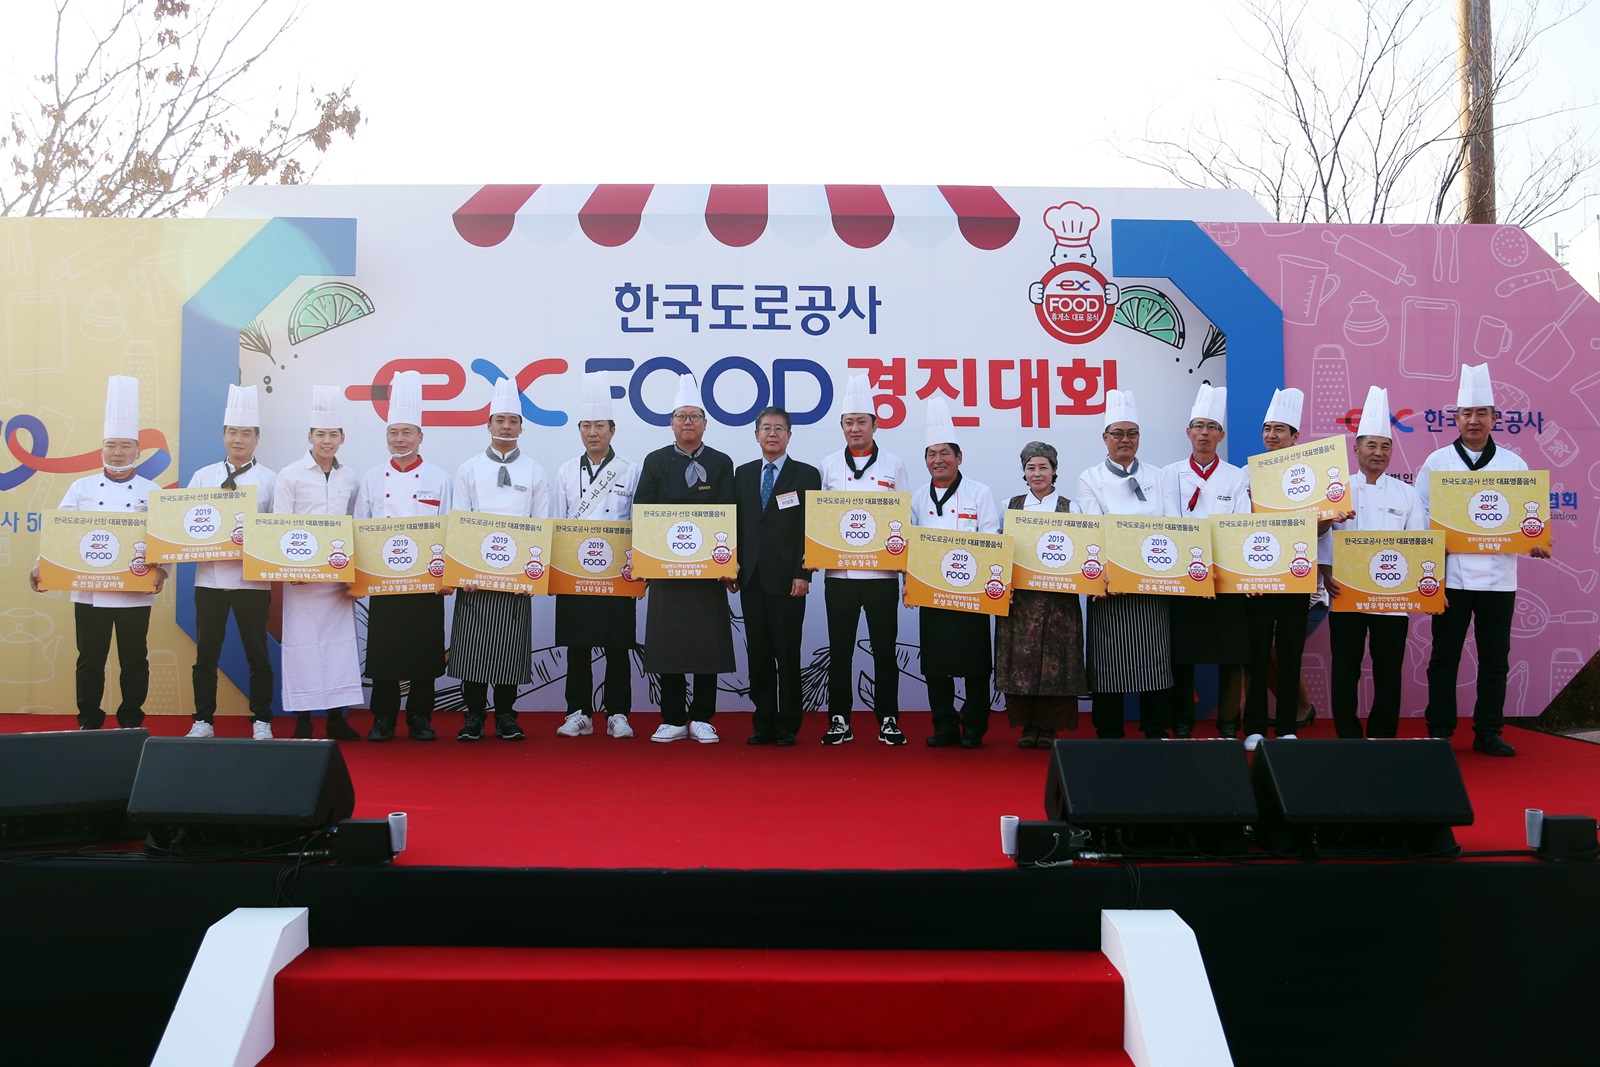 EX-FOOD 선발 경진대회